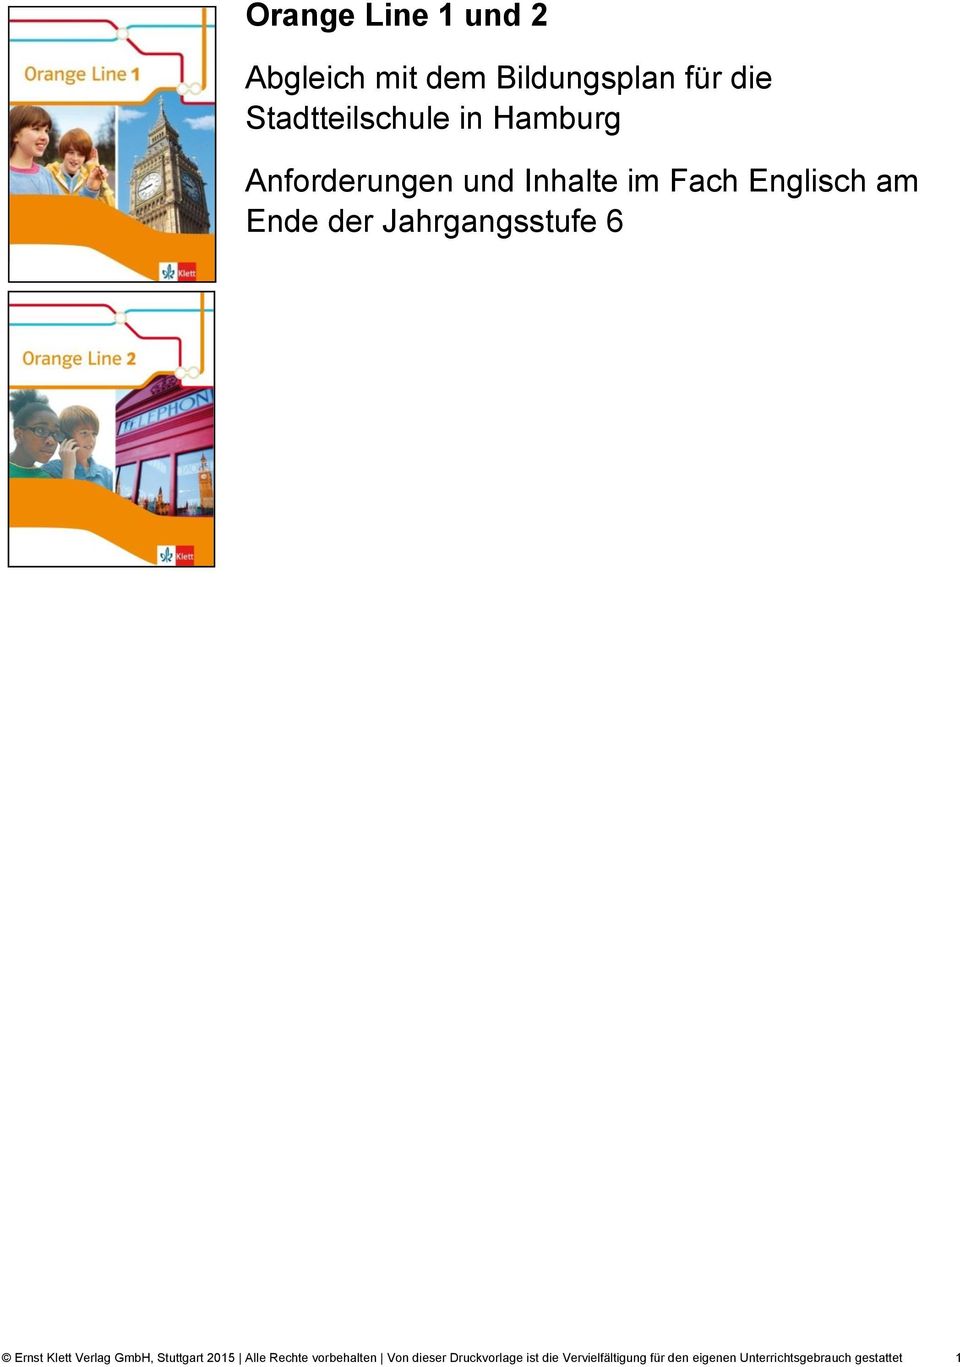 Ernst Klett Verlag GmbH, Stuttgart 2015 Alle Rechte vorbehalten Von dieser